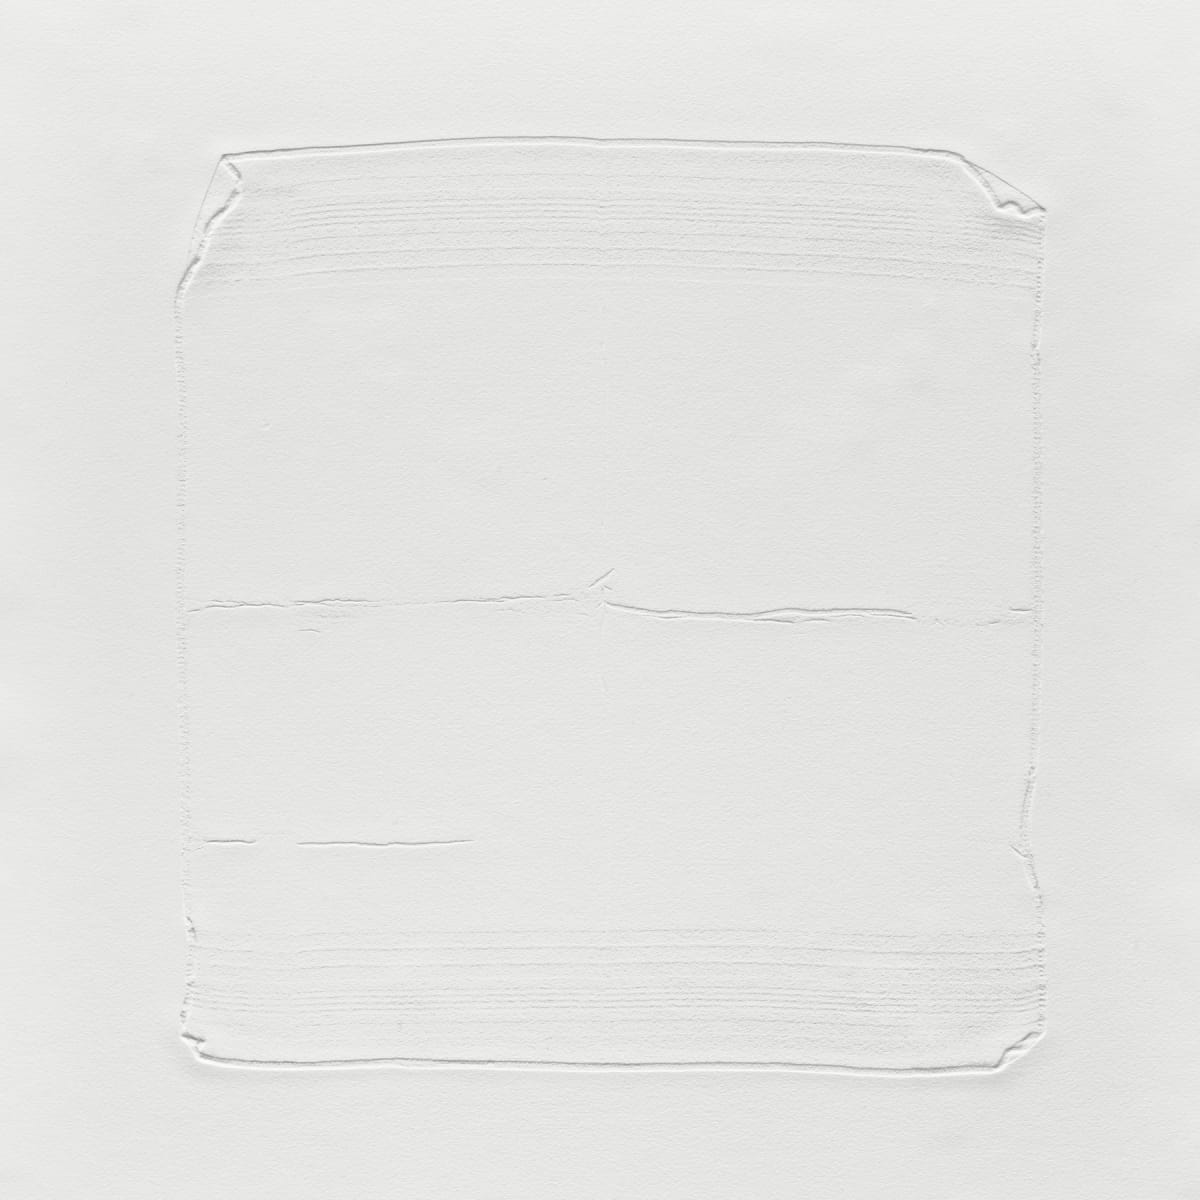 Handkerchief (VI) by Emma Jane Royer 